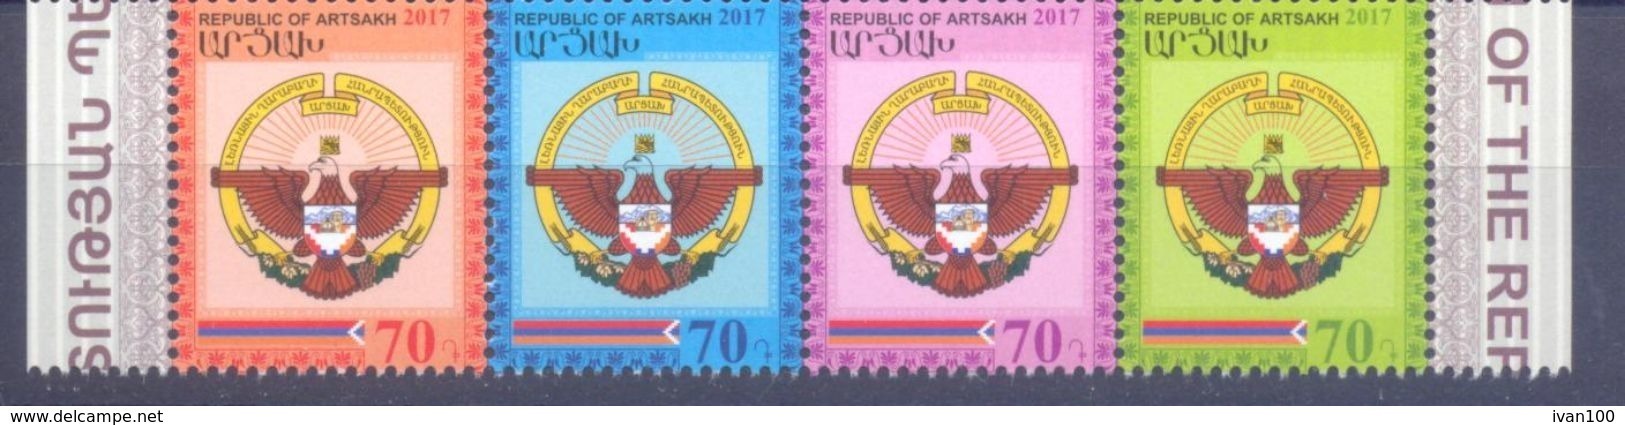 2017. Mountainous Karabakh, 25y Of Independence, 4v, Mint/** - Armenia